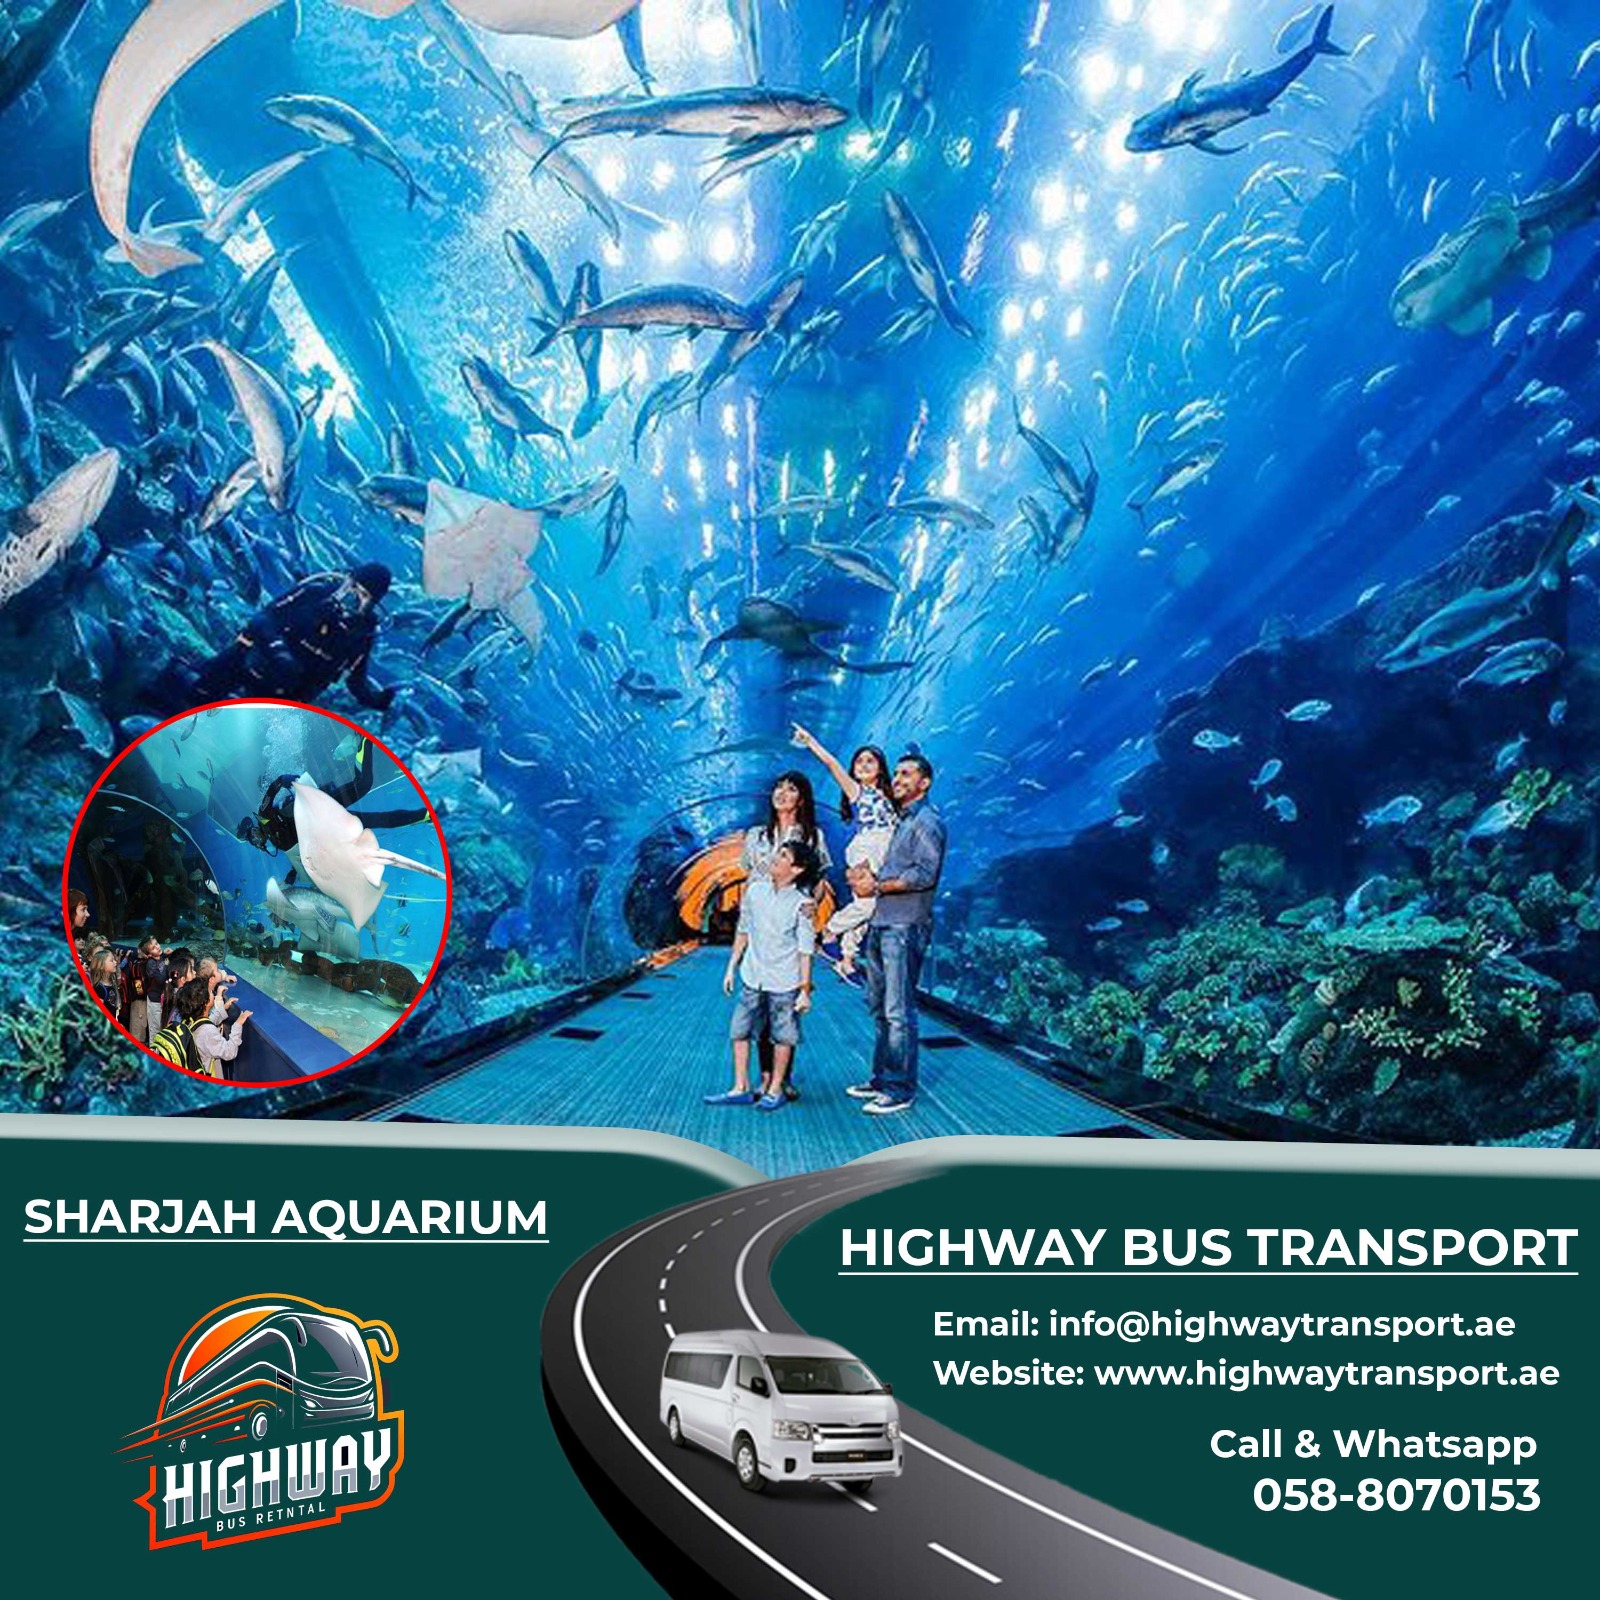 Interior of Sharjah Aquarium showcasing diverse marine life and exhibits